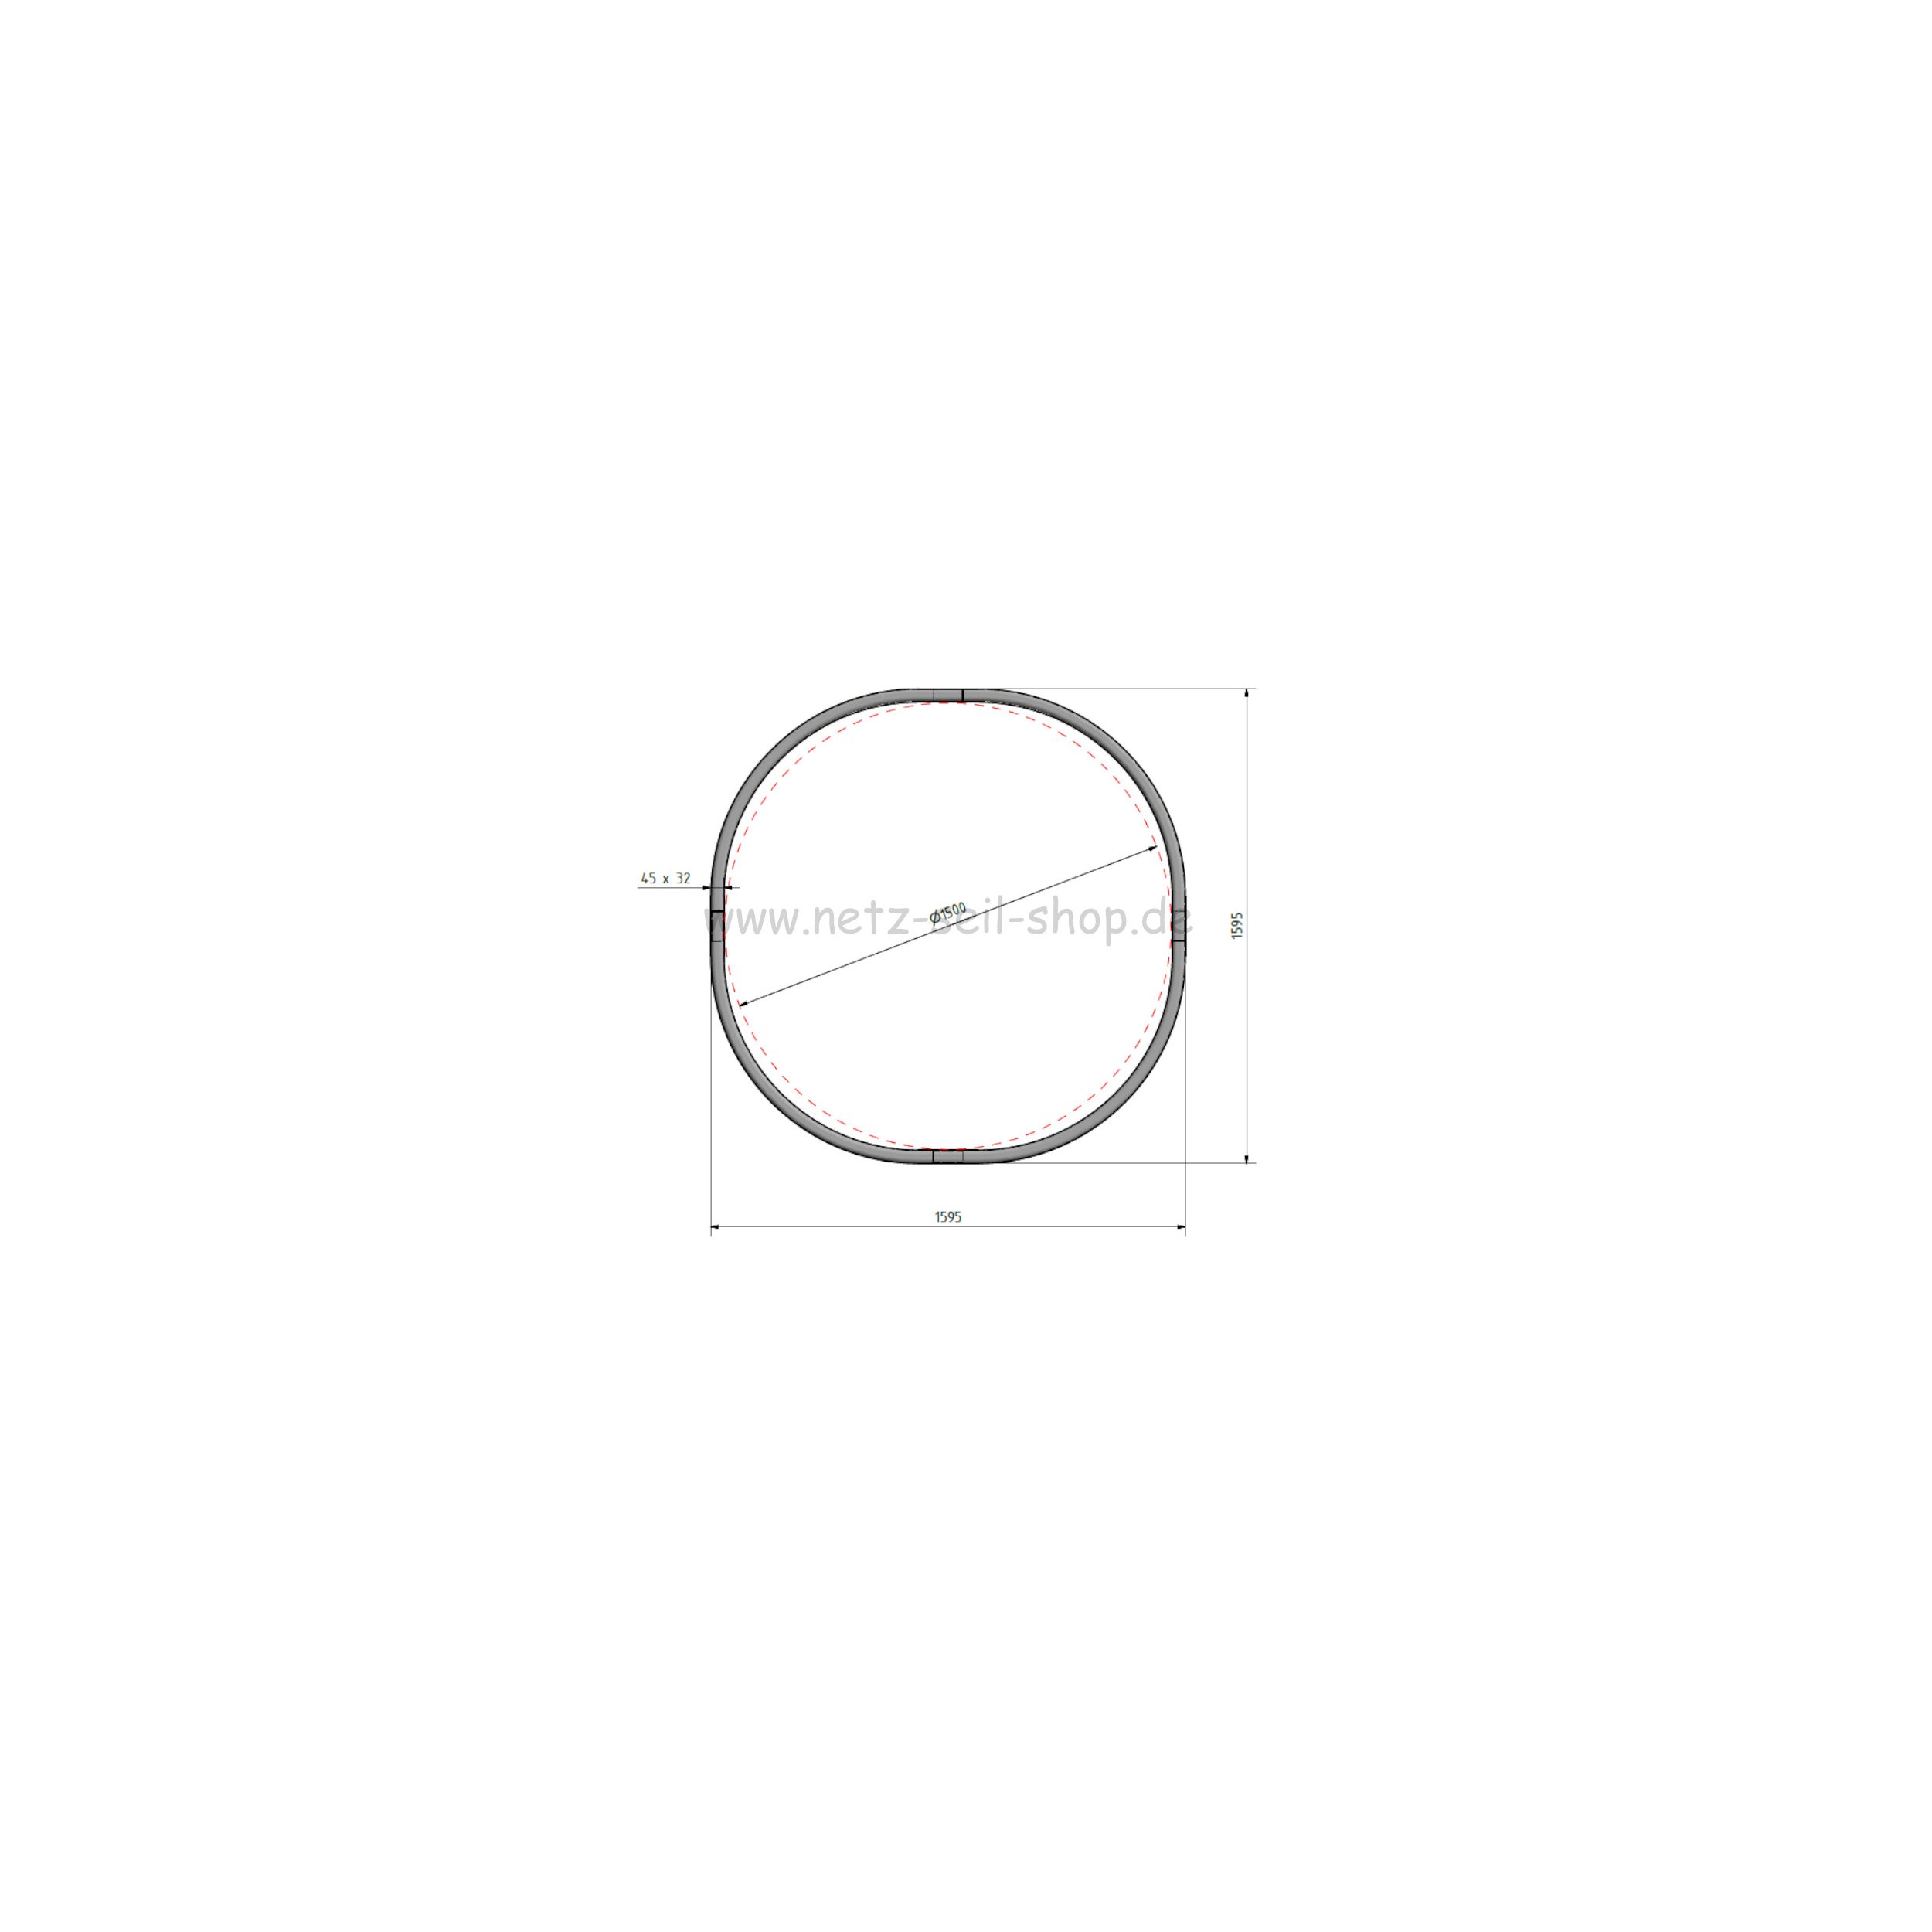 Heunetz für Rundballen, 180 cm Durchmesser, Höhe 120cm,  Ø 5 mm Garn, # 80 mm Maschenweite mit PE Ring inkl. Sand für Ringbefüllung